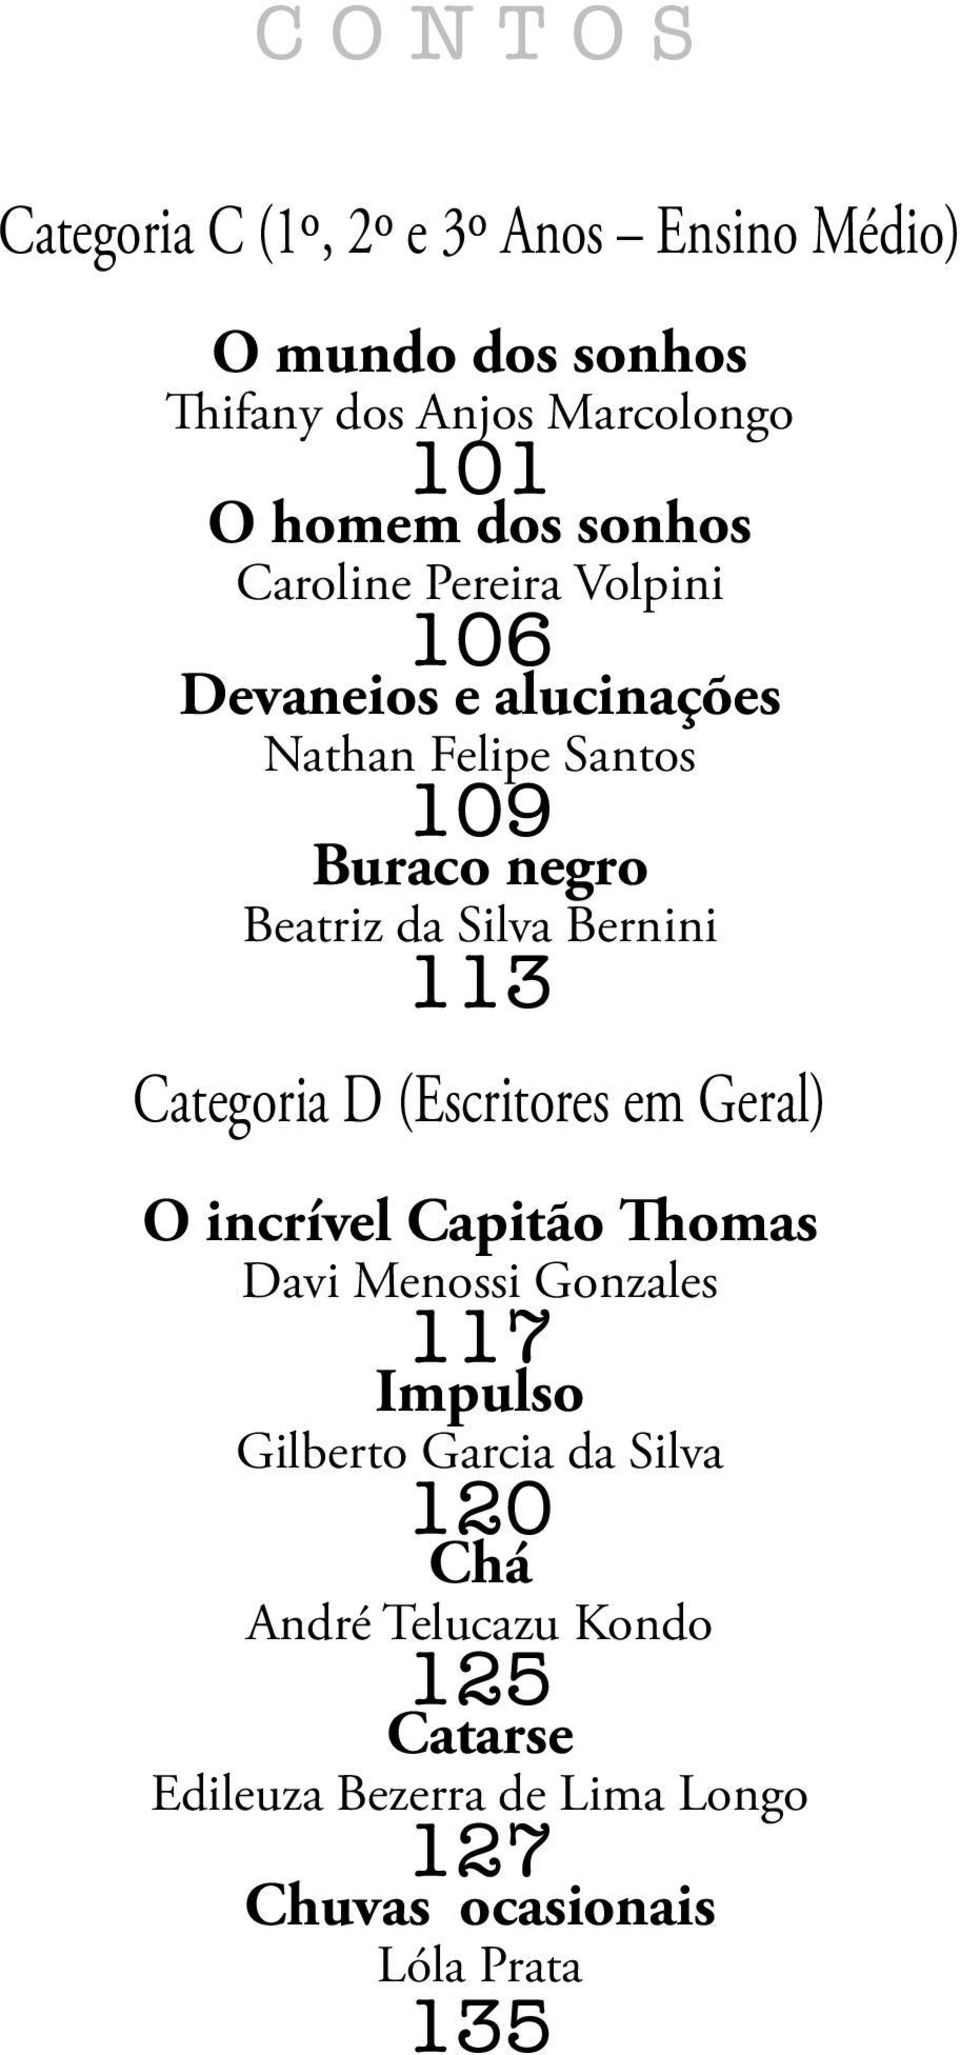 Bernini 113 Categoria D (Escritores em Geral) O incrível Capitão Thomas Davi Menossi Gonzales 117 Impulso Gilberto